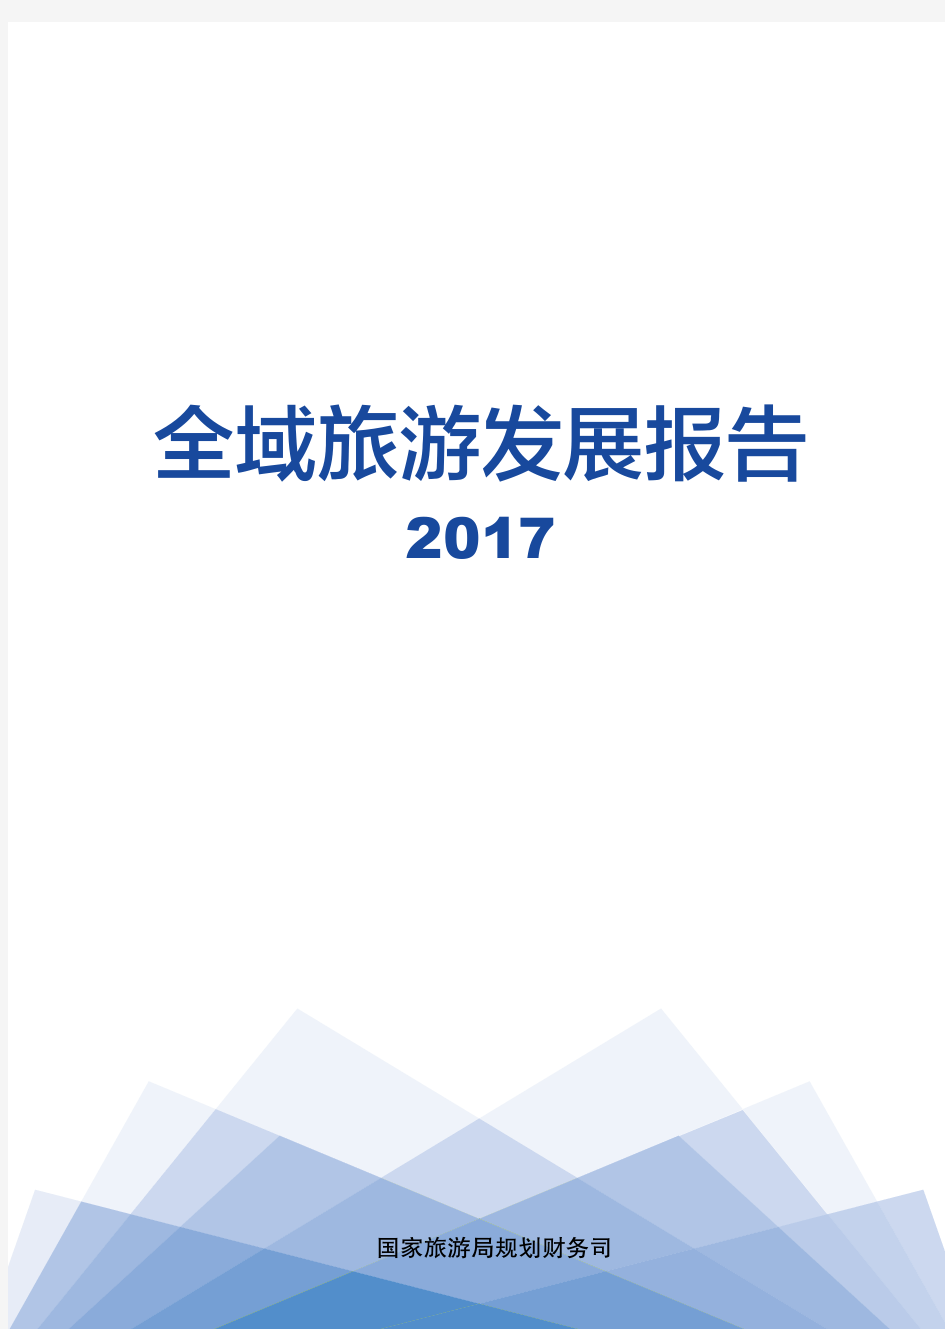 2017全域旅游发展报告(国家旅游局)